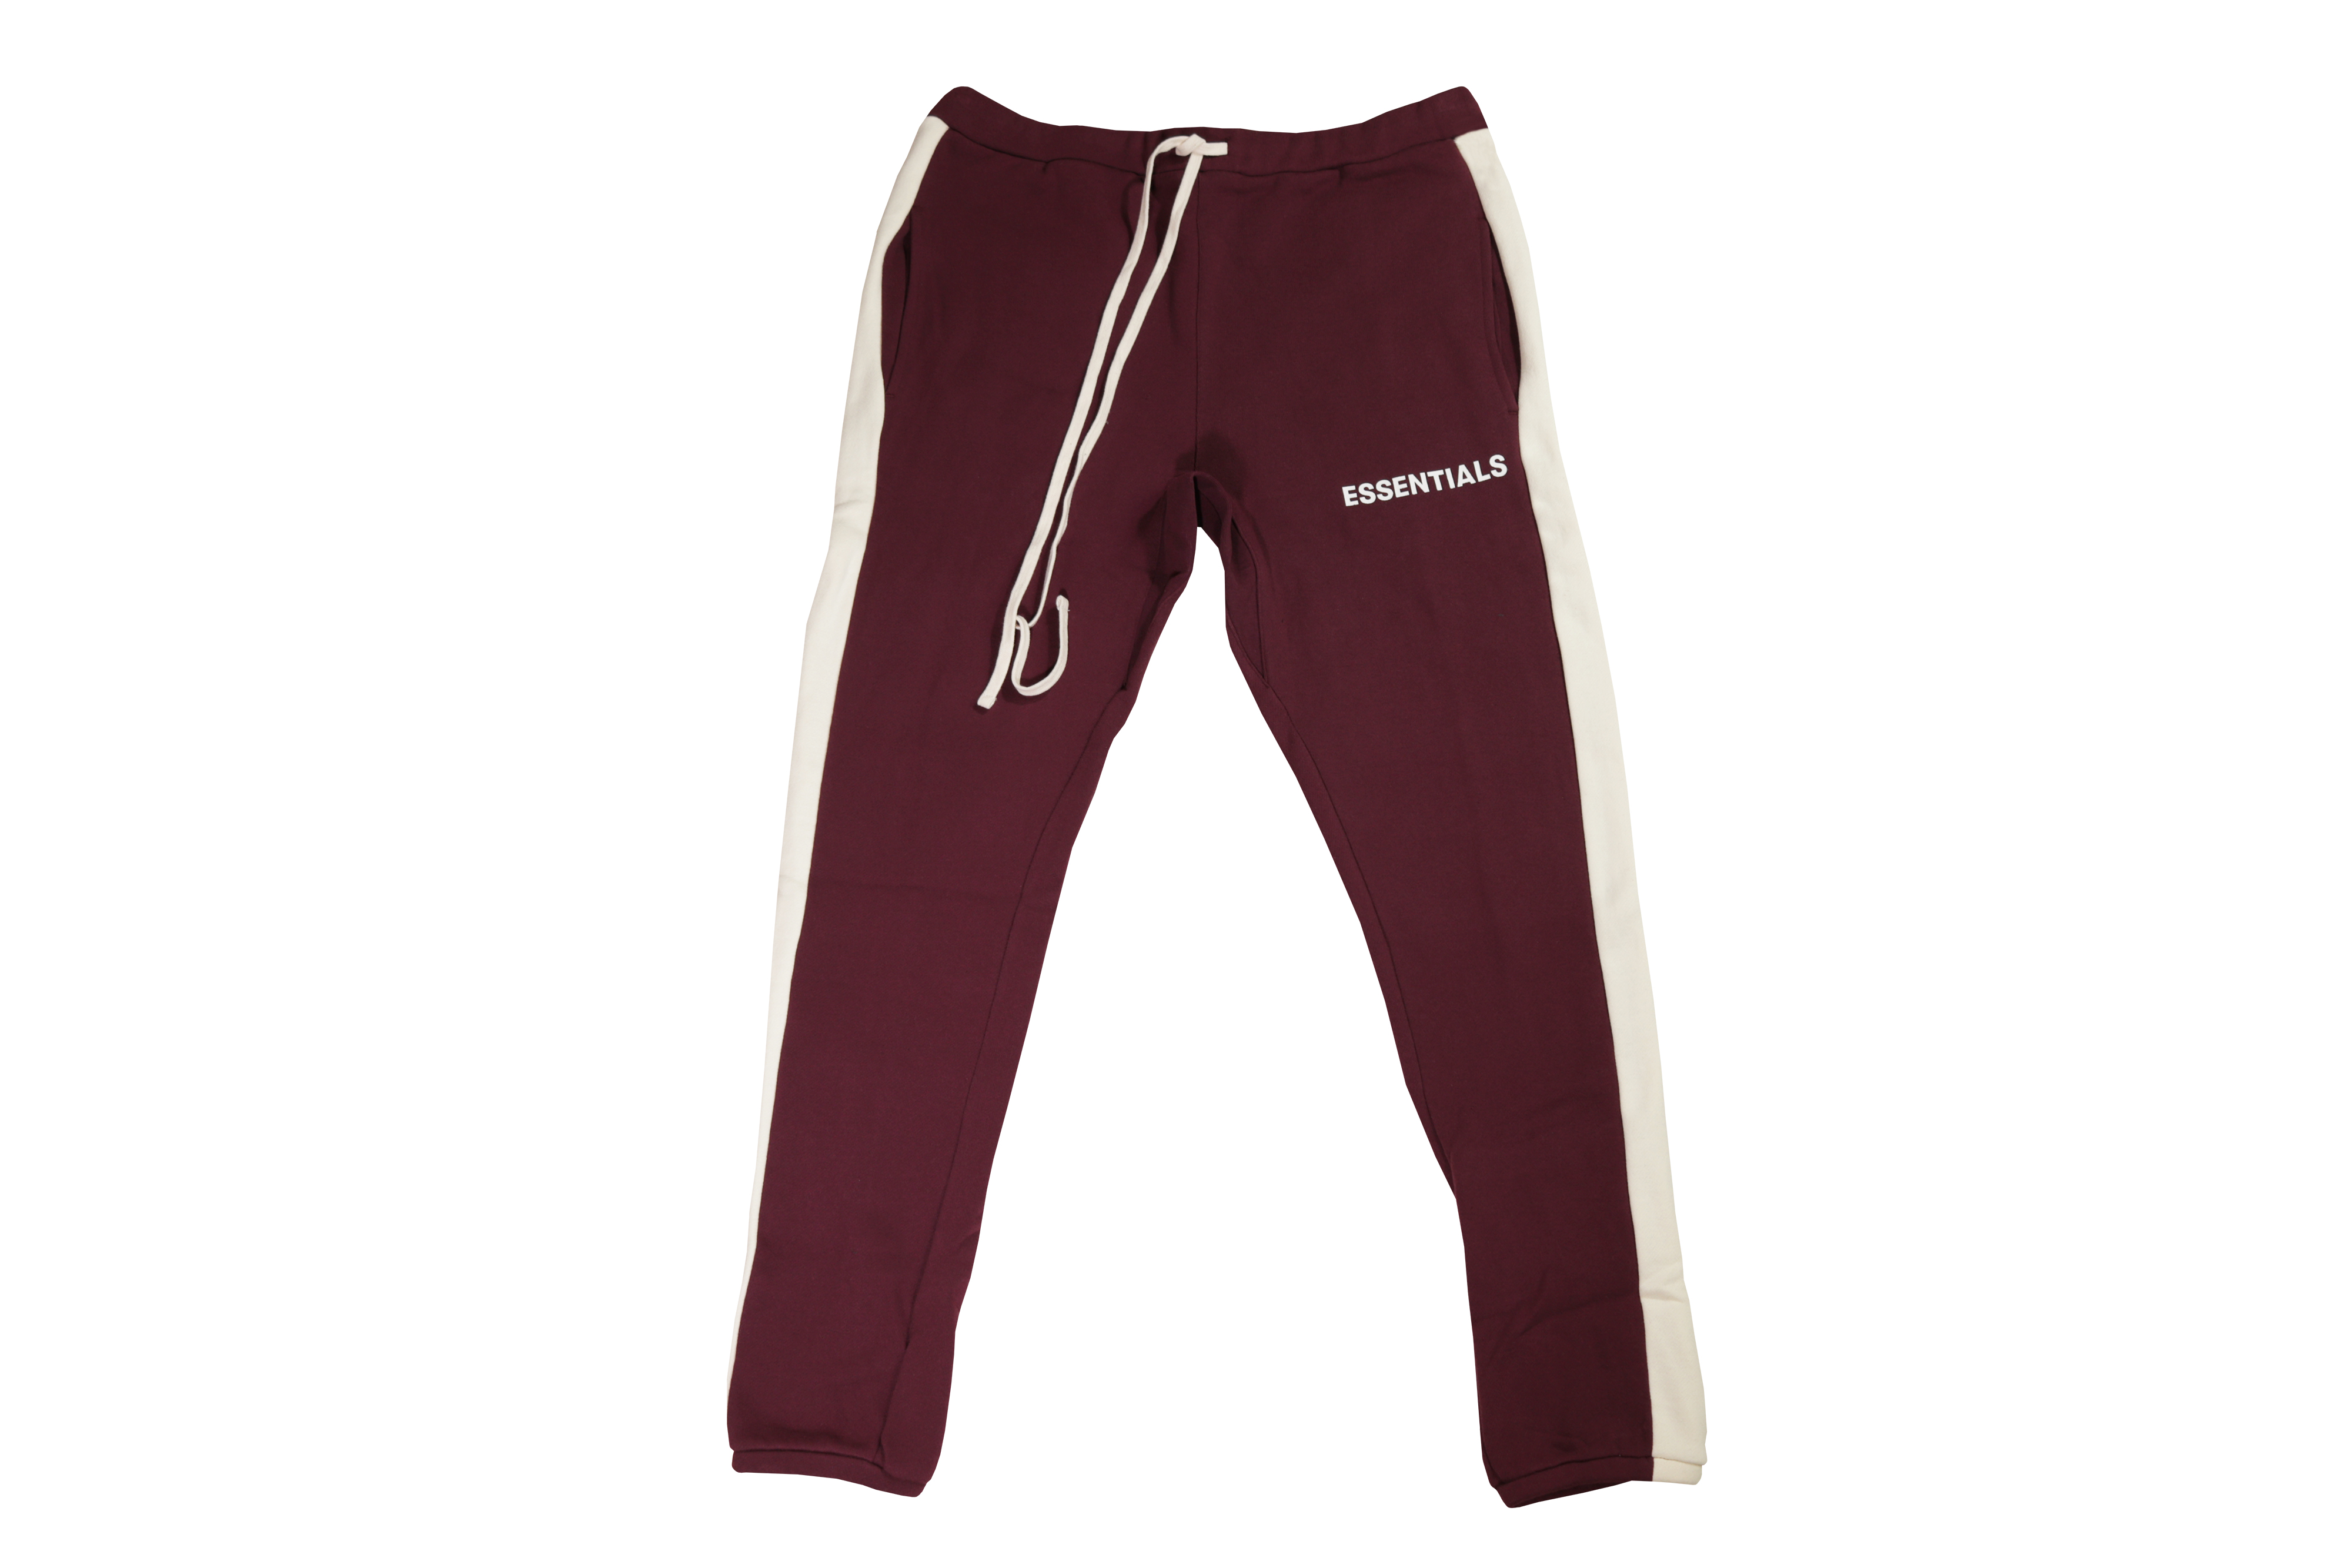 Sweatpants With Stripe On Side Hot Sale, 55% OFF | www 